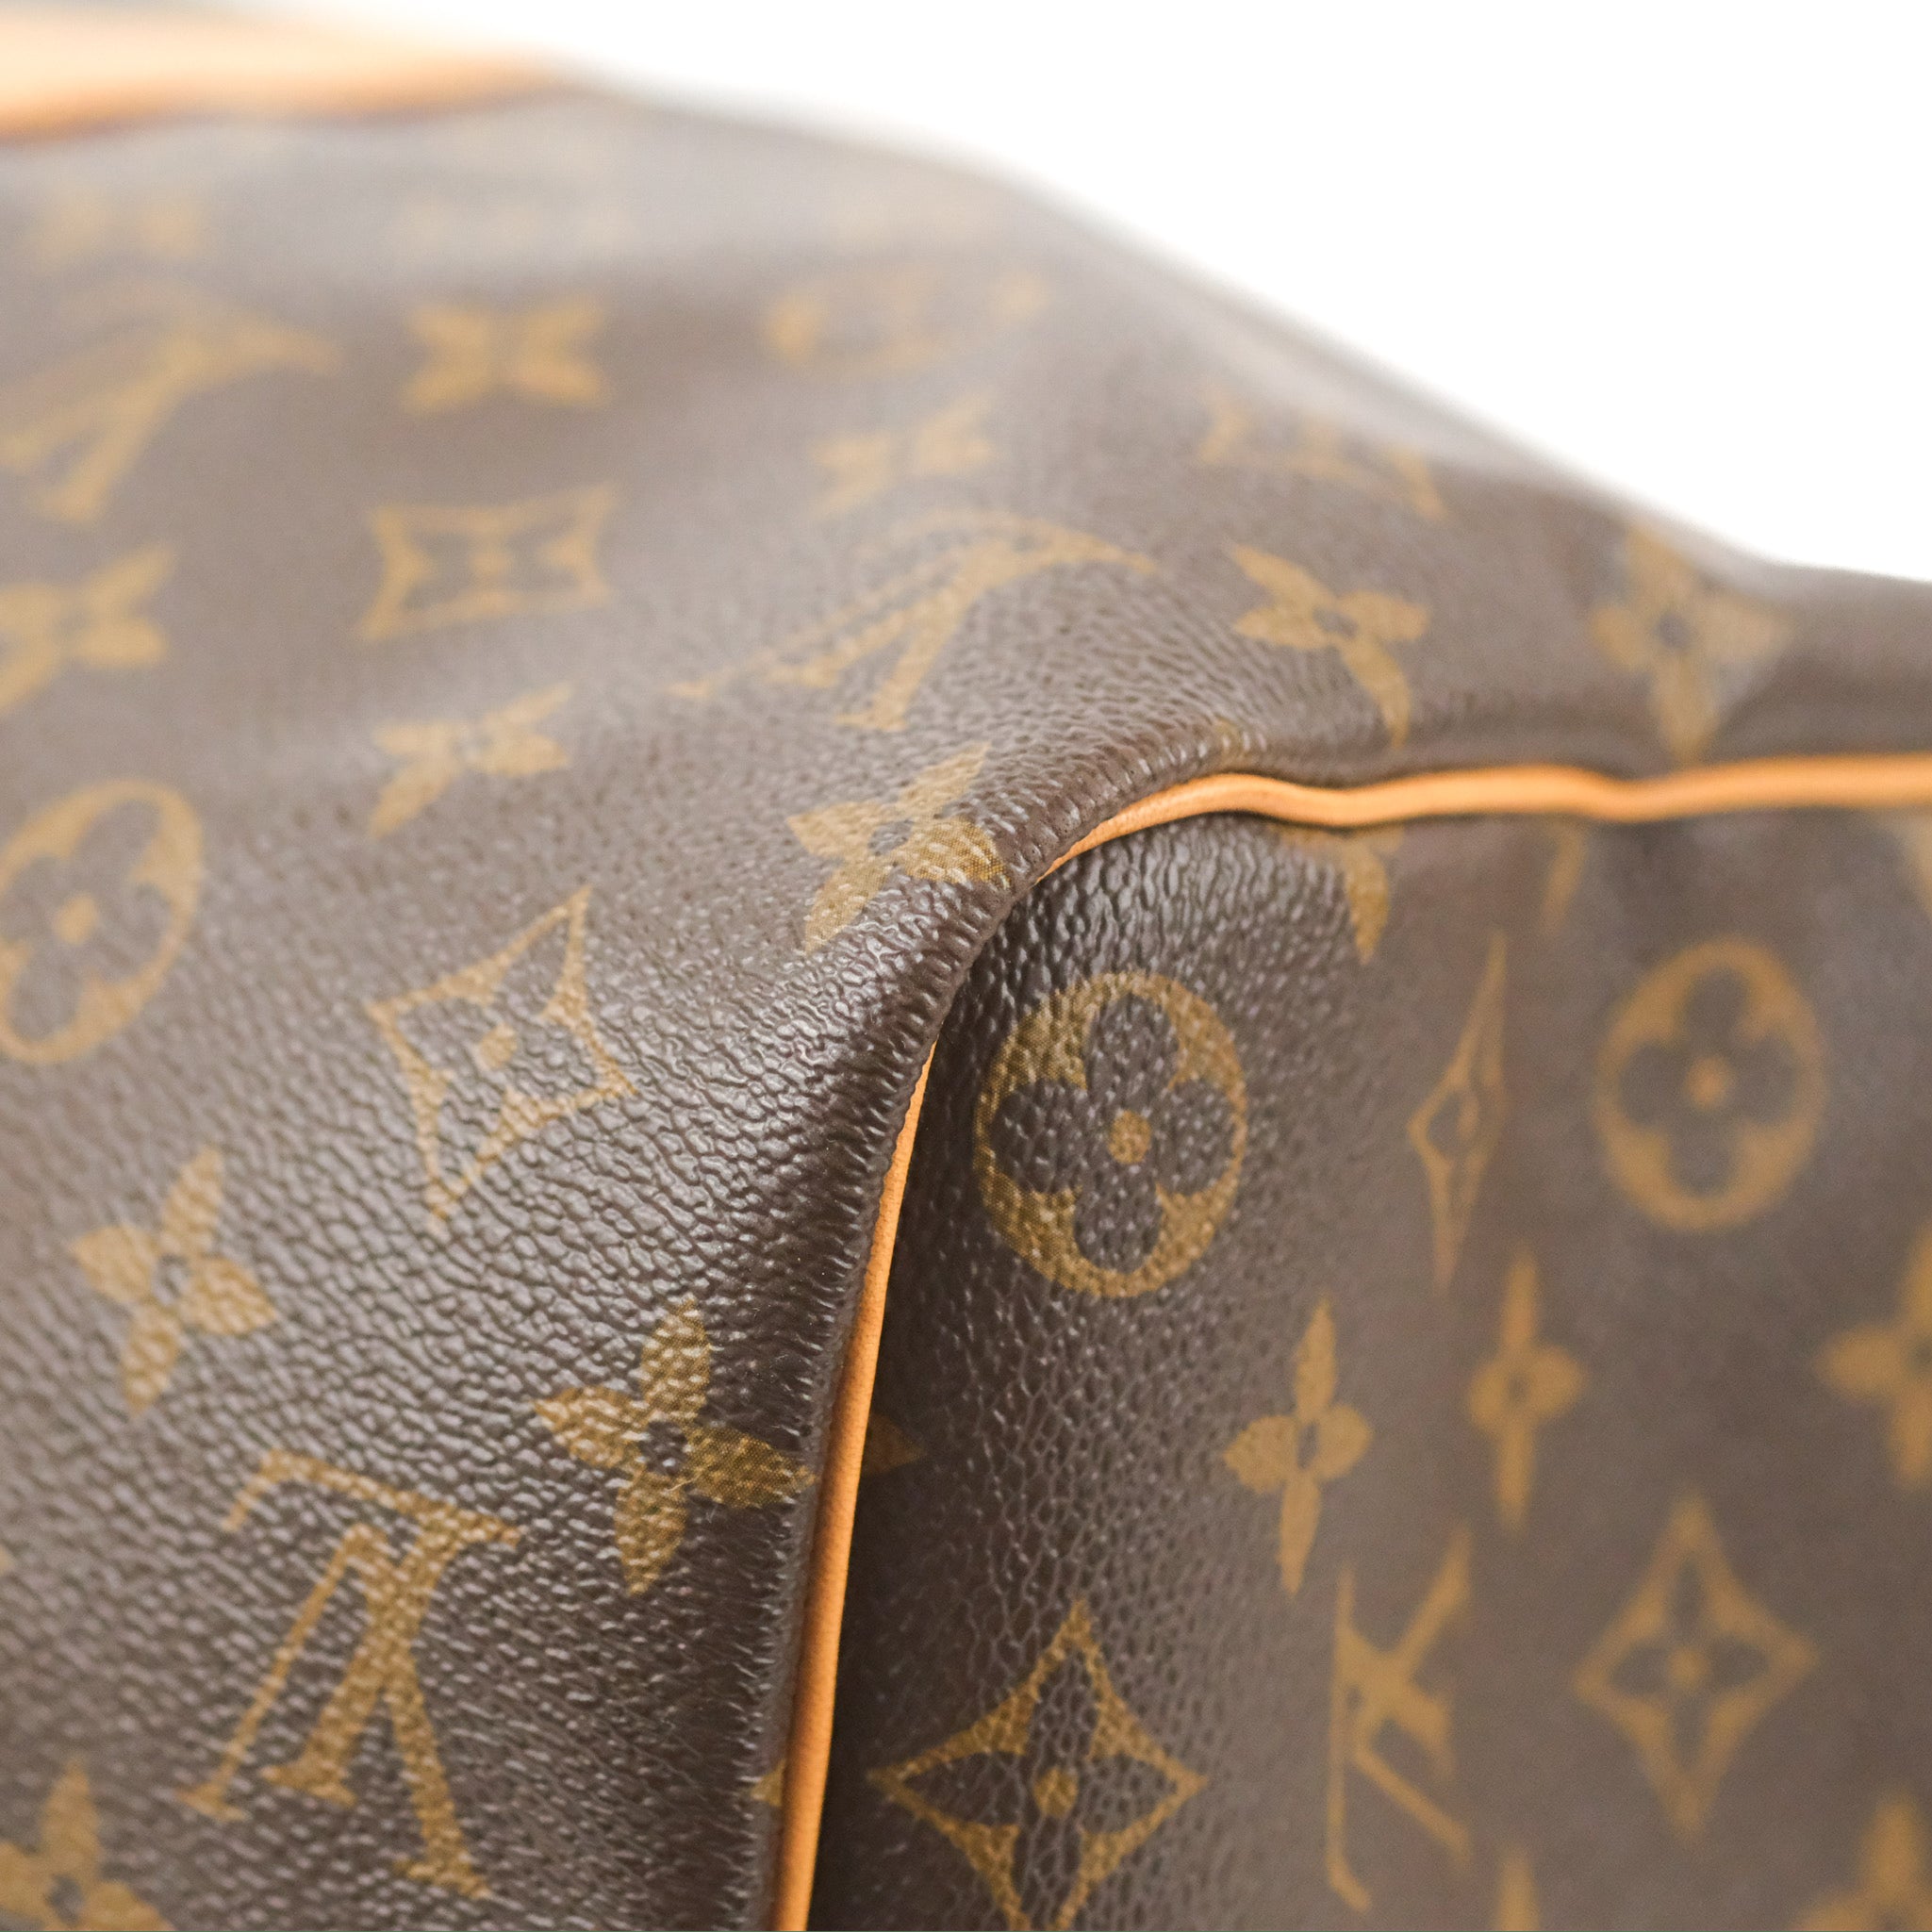 Louis Vuitton Keepall Duffle Bag 45 Monogram Canvas – Coco